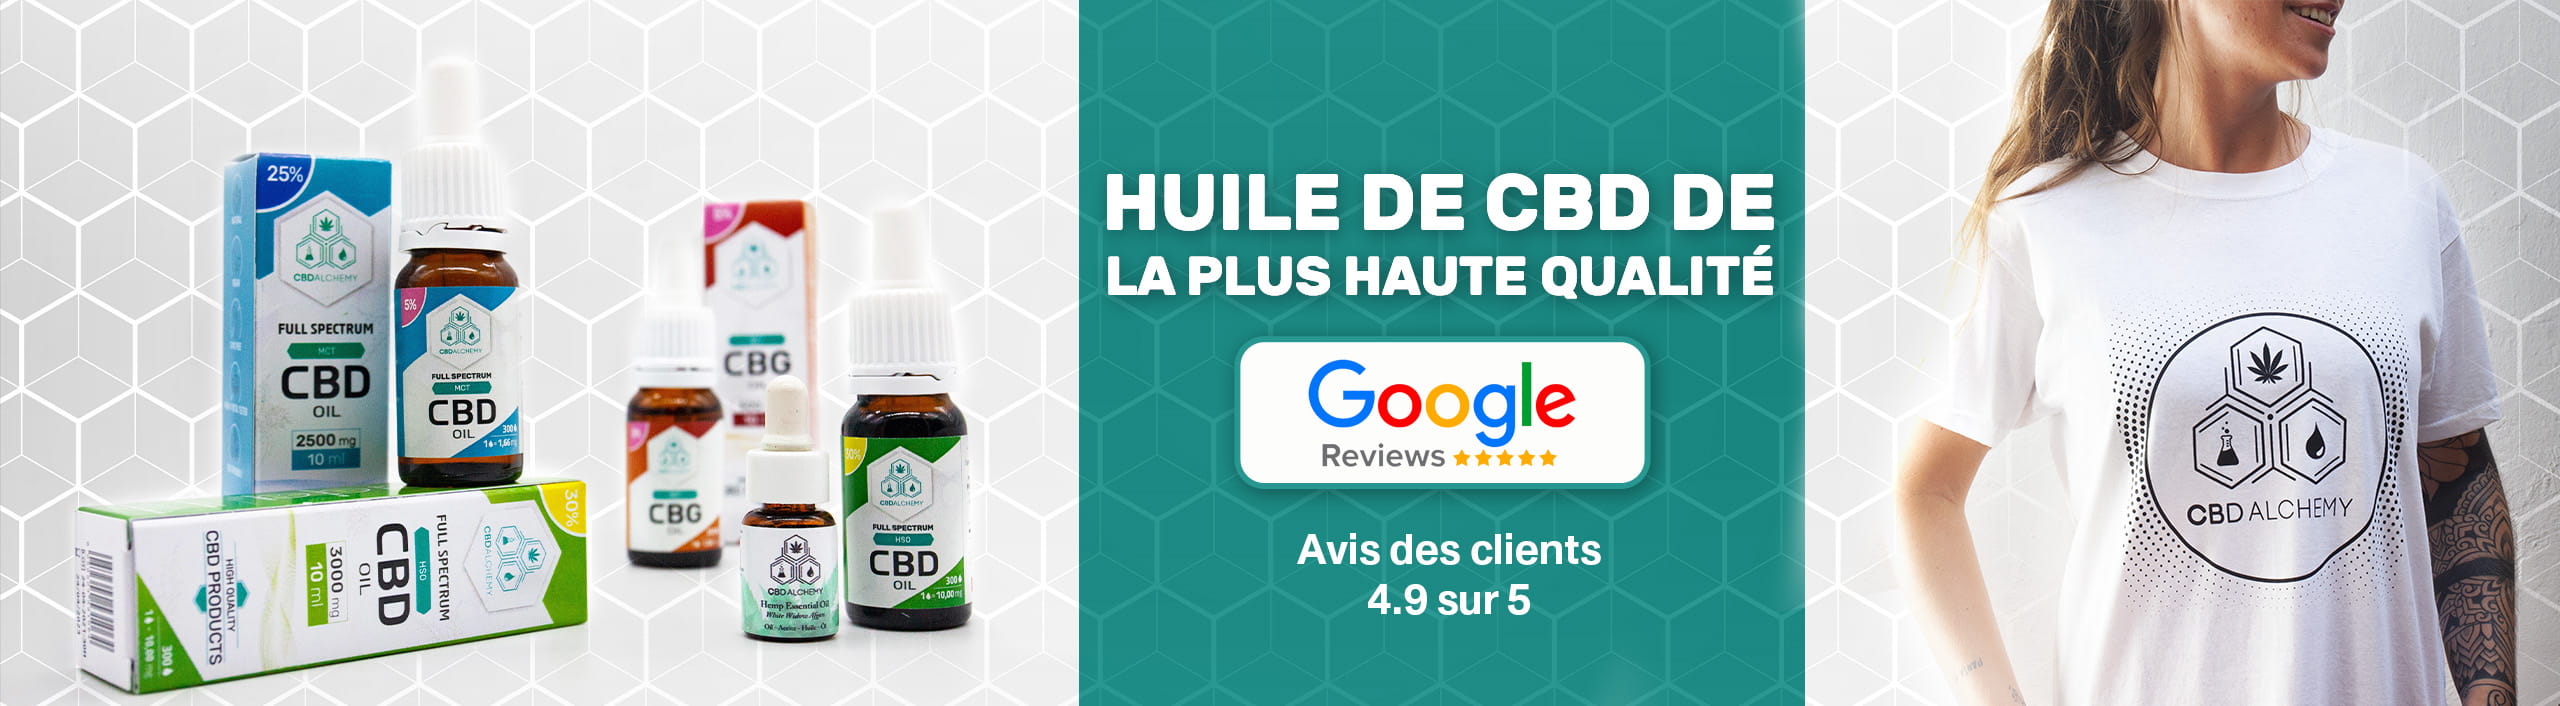 CBD Alchemy est félicité sur Google My Business pour ses huiles de CBD de haute qualité.